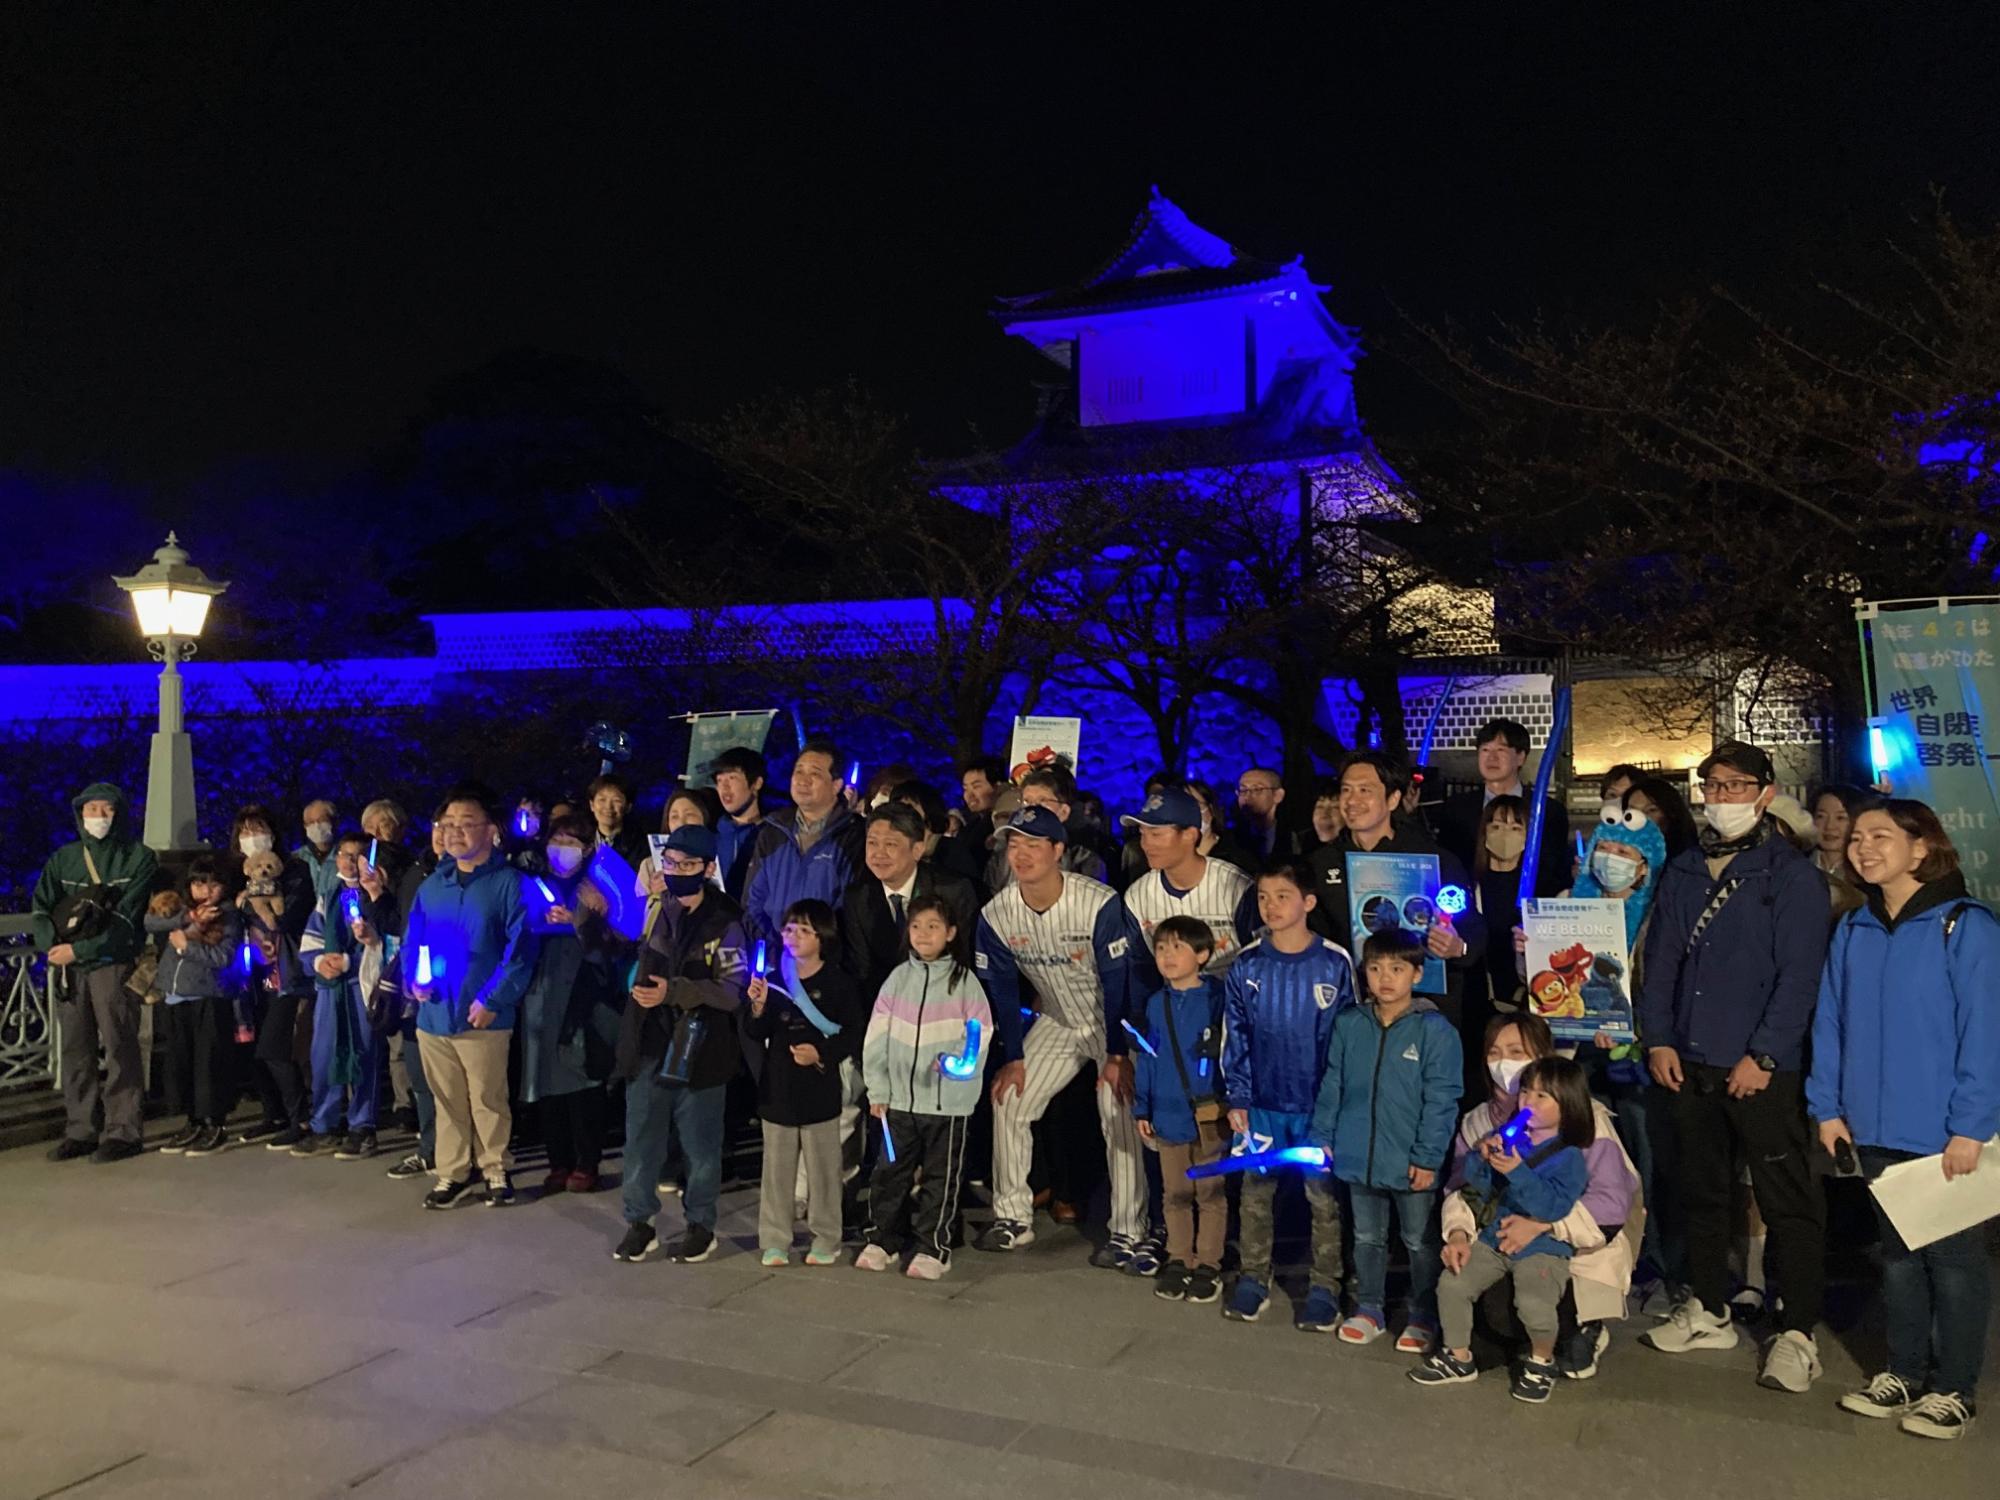 シンボルカラーの青でライトアップされた石川門の前での集合写真